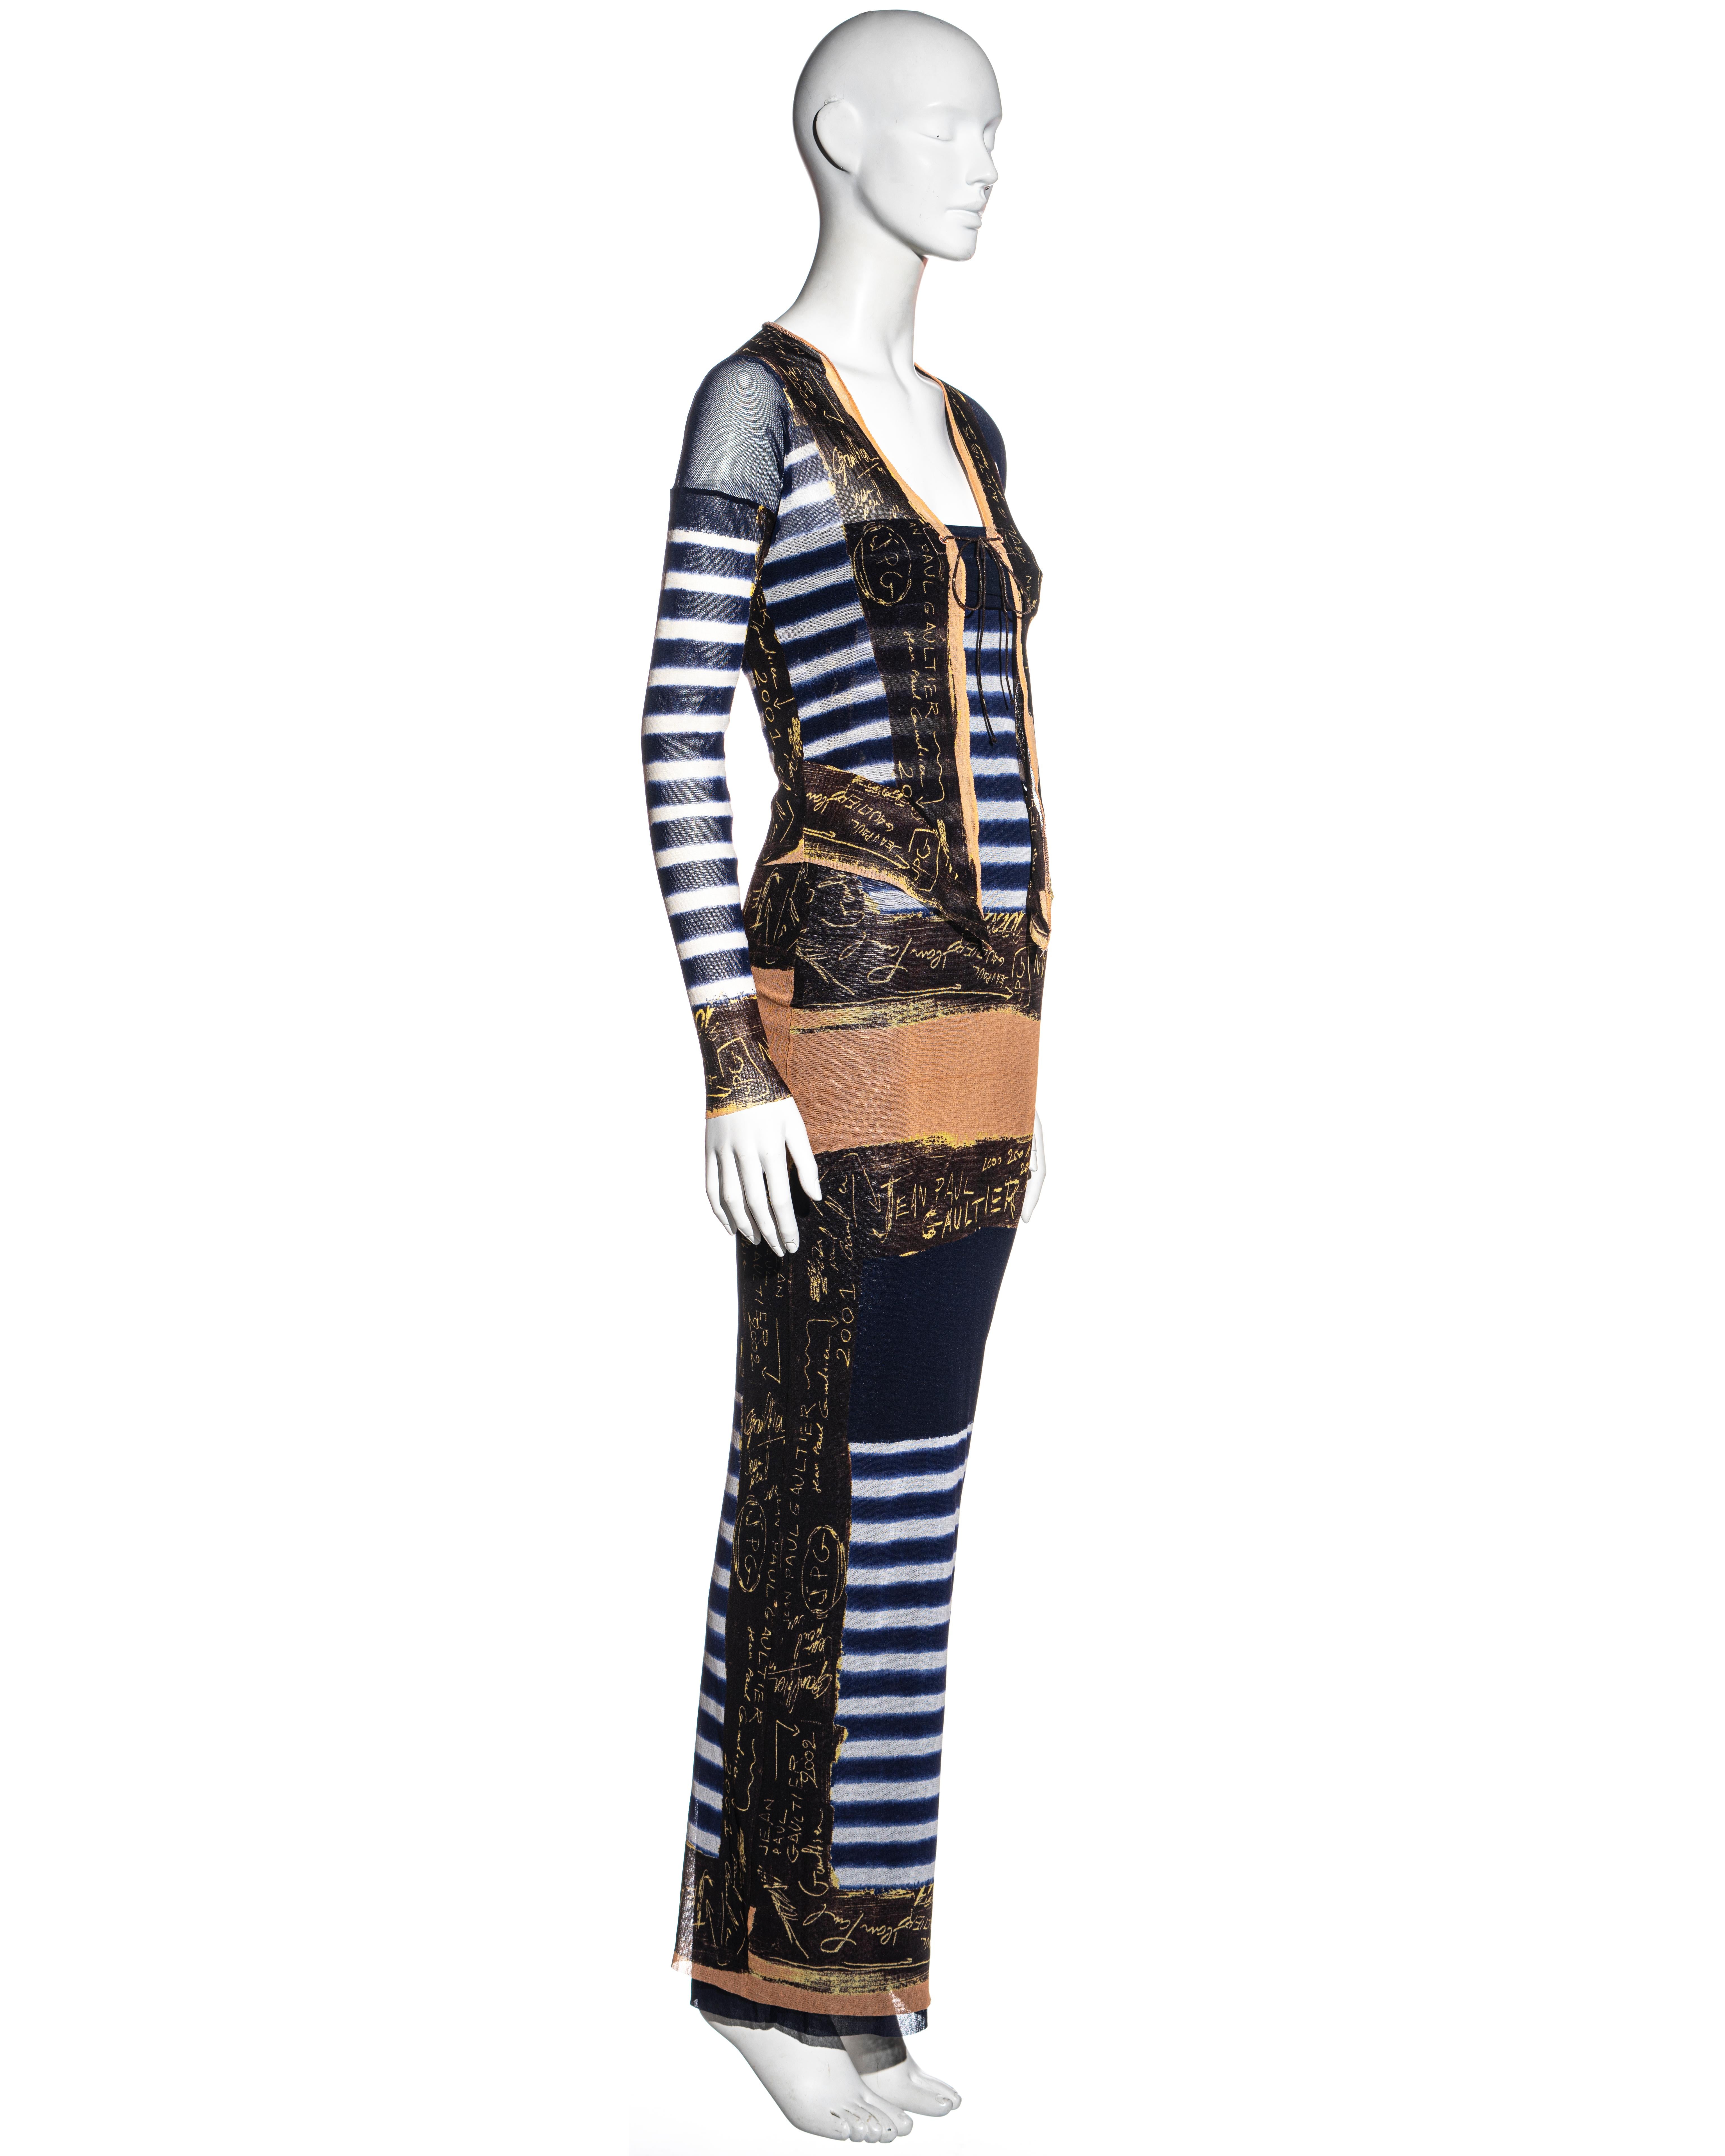 Jean Paul Gaultier Marinefarben gestreiftes Kleid und Strickjacke aus Nylonnetz, ca. 2001 1